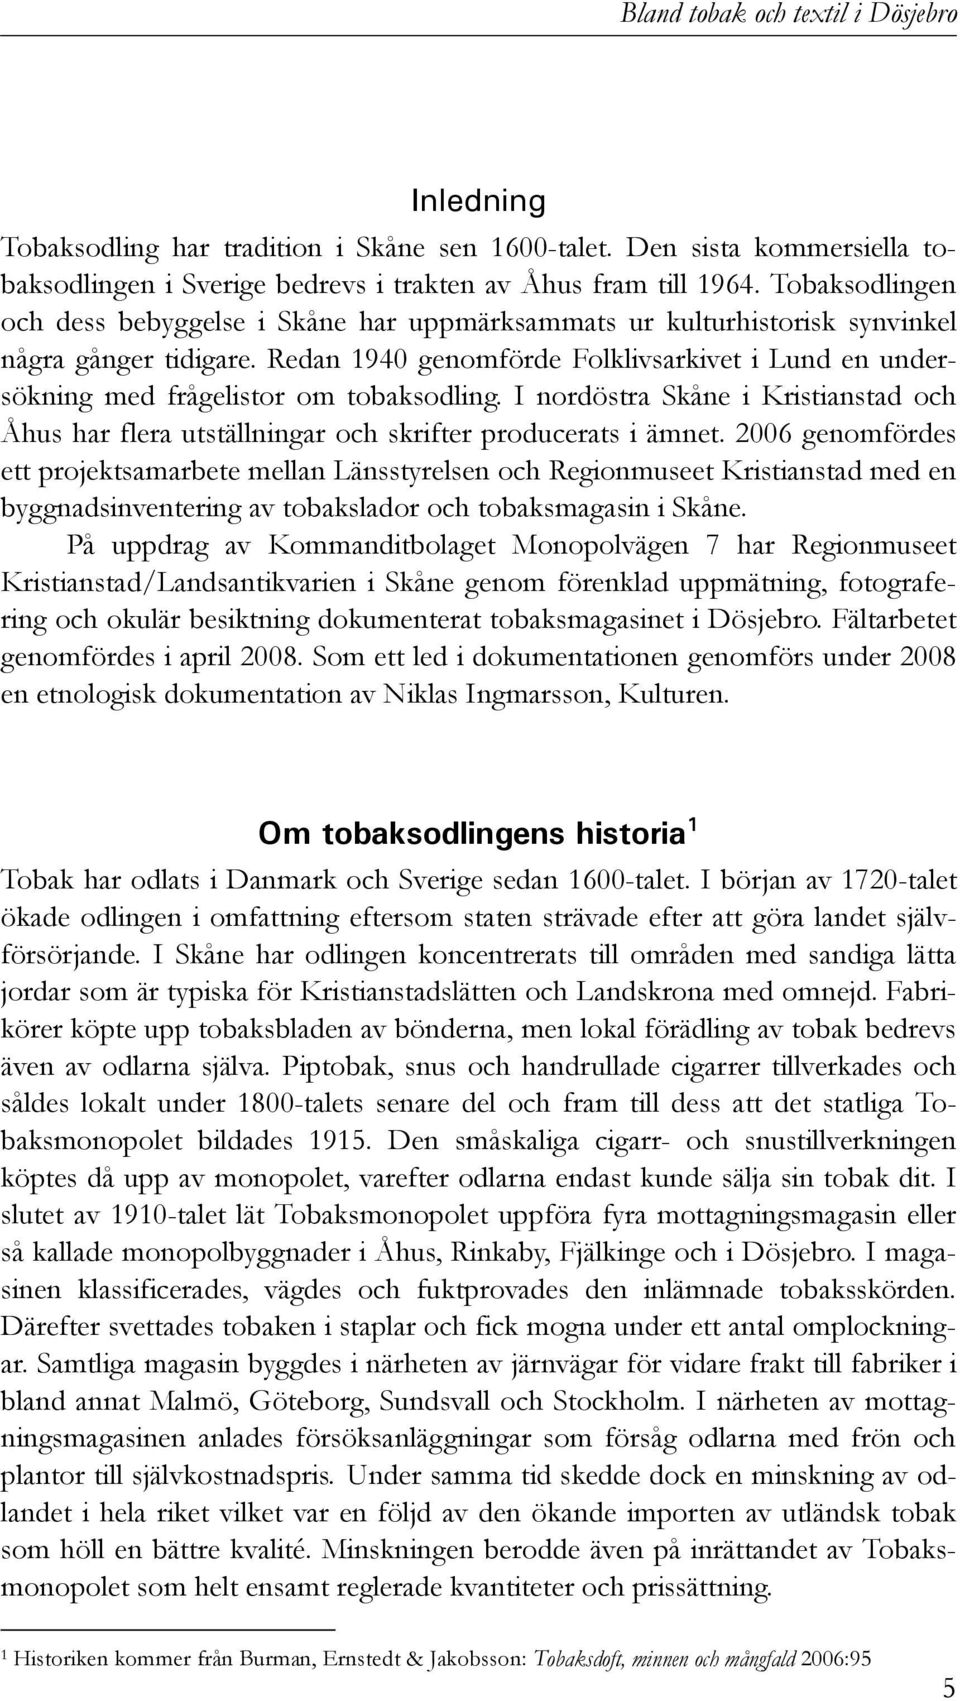 Redan 1940 genomförde Folklivsarkivet i Lund en undersökning med frågelistor om tobaksodling. I nordöstra Skåne i Kristianstad och Åhus har flera utställningar och skrifter producerats i ämnet.